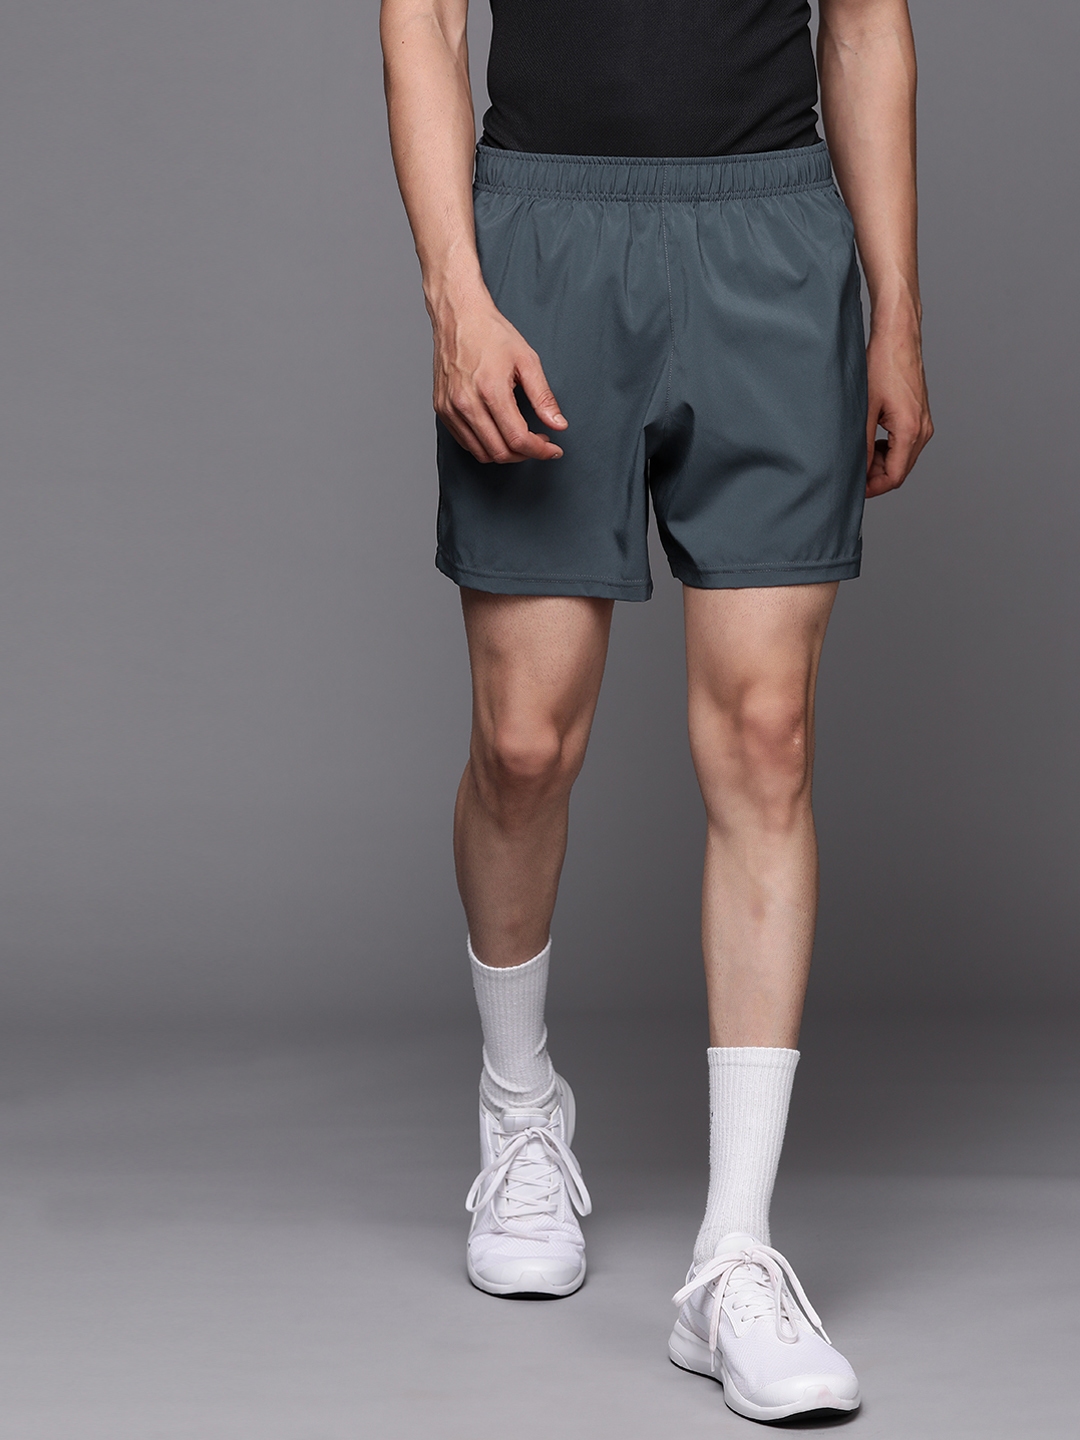 Buy New Balance Men Grey Running Sports Shorts - Shorts for Men ...